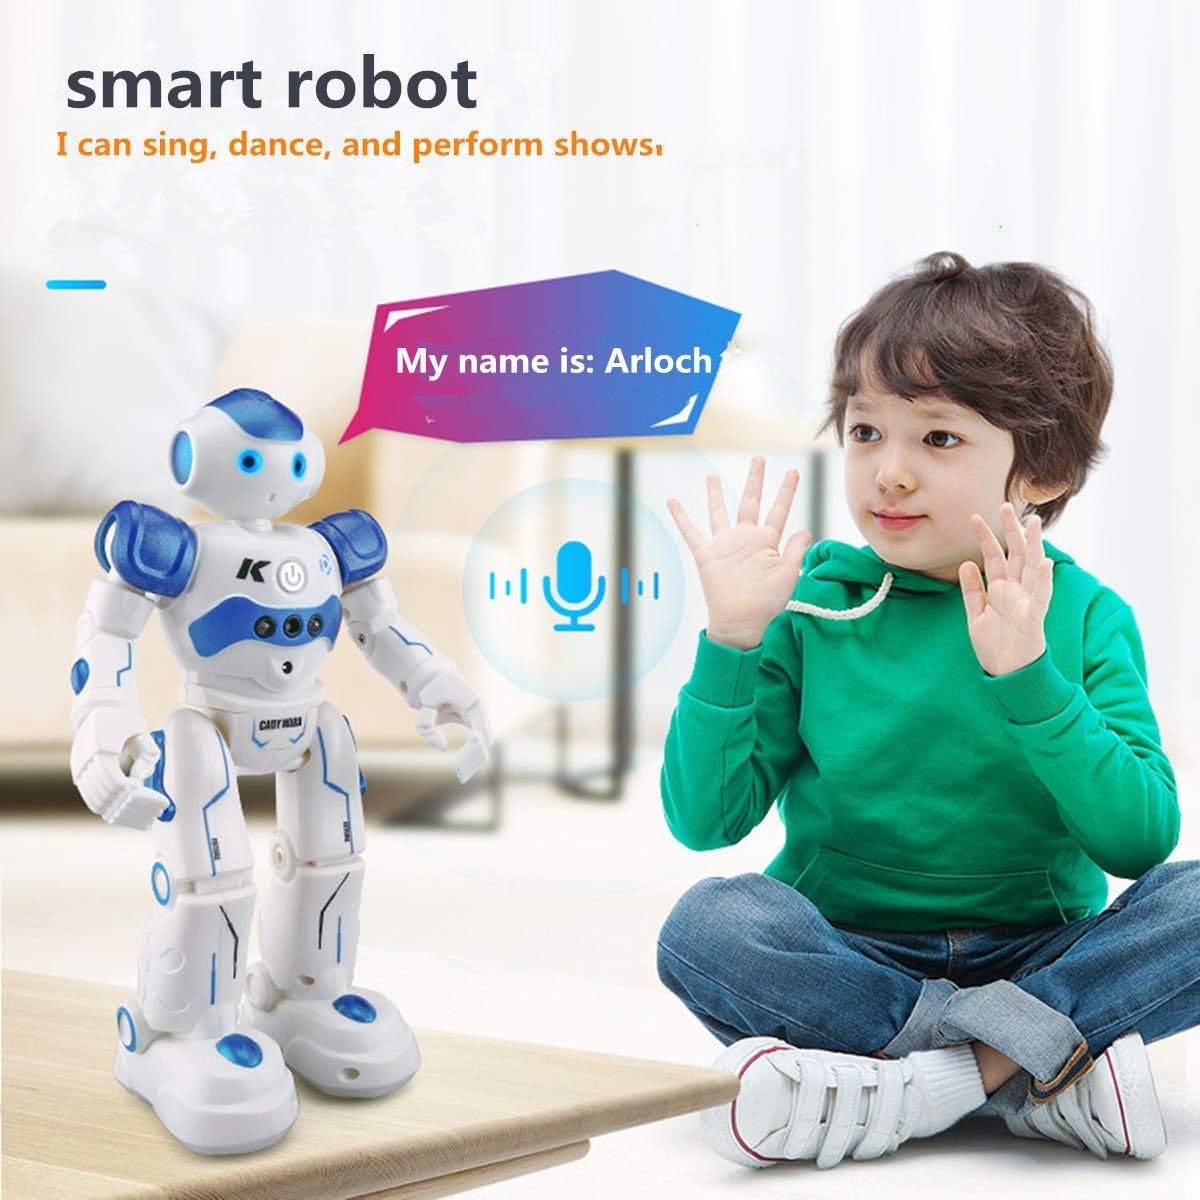 Witte en blauwe Arlock kinderrobot met heldere LED-ogen, geschikt voor gebarenbesturing en interactieve activiteiten zoals zingen en dansen